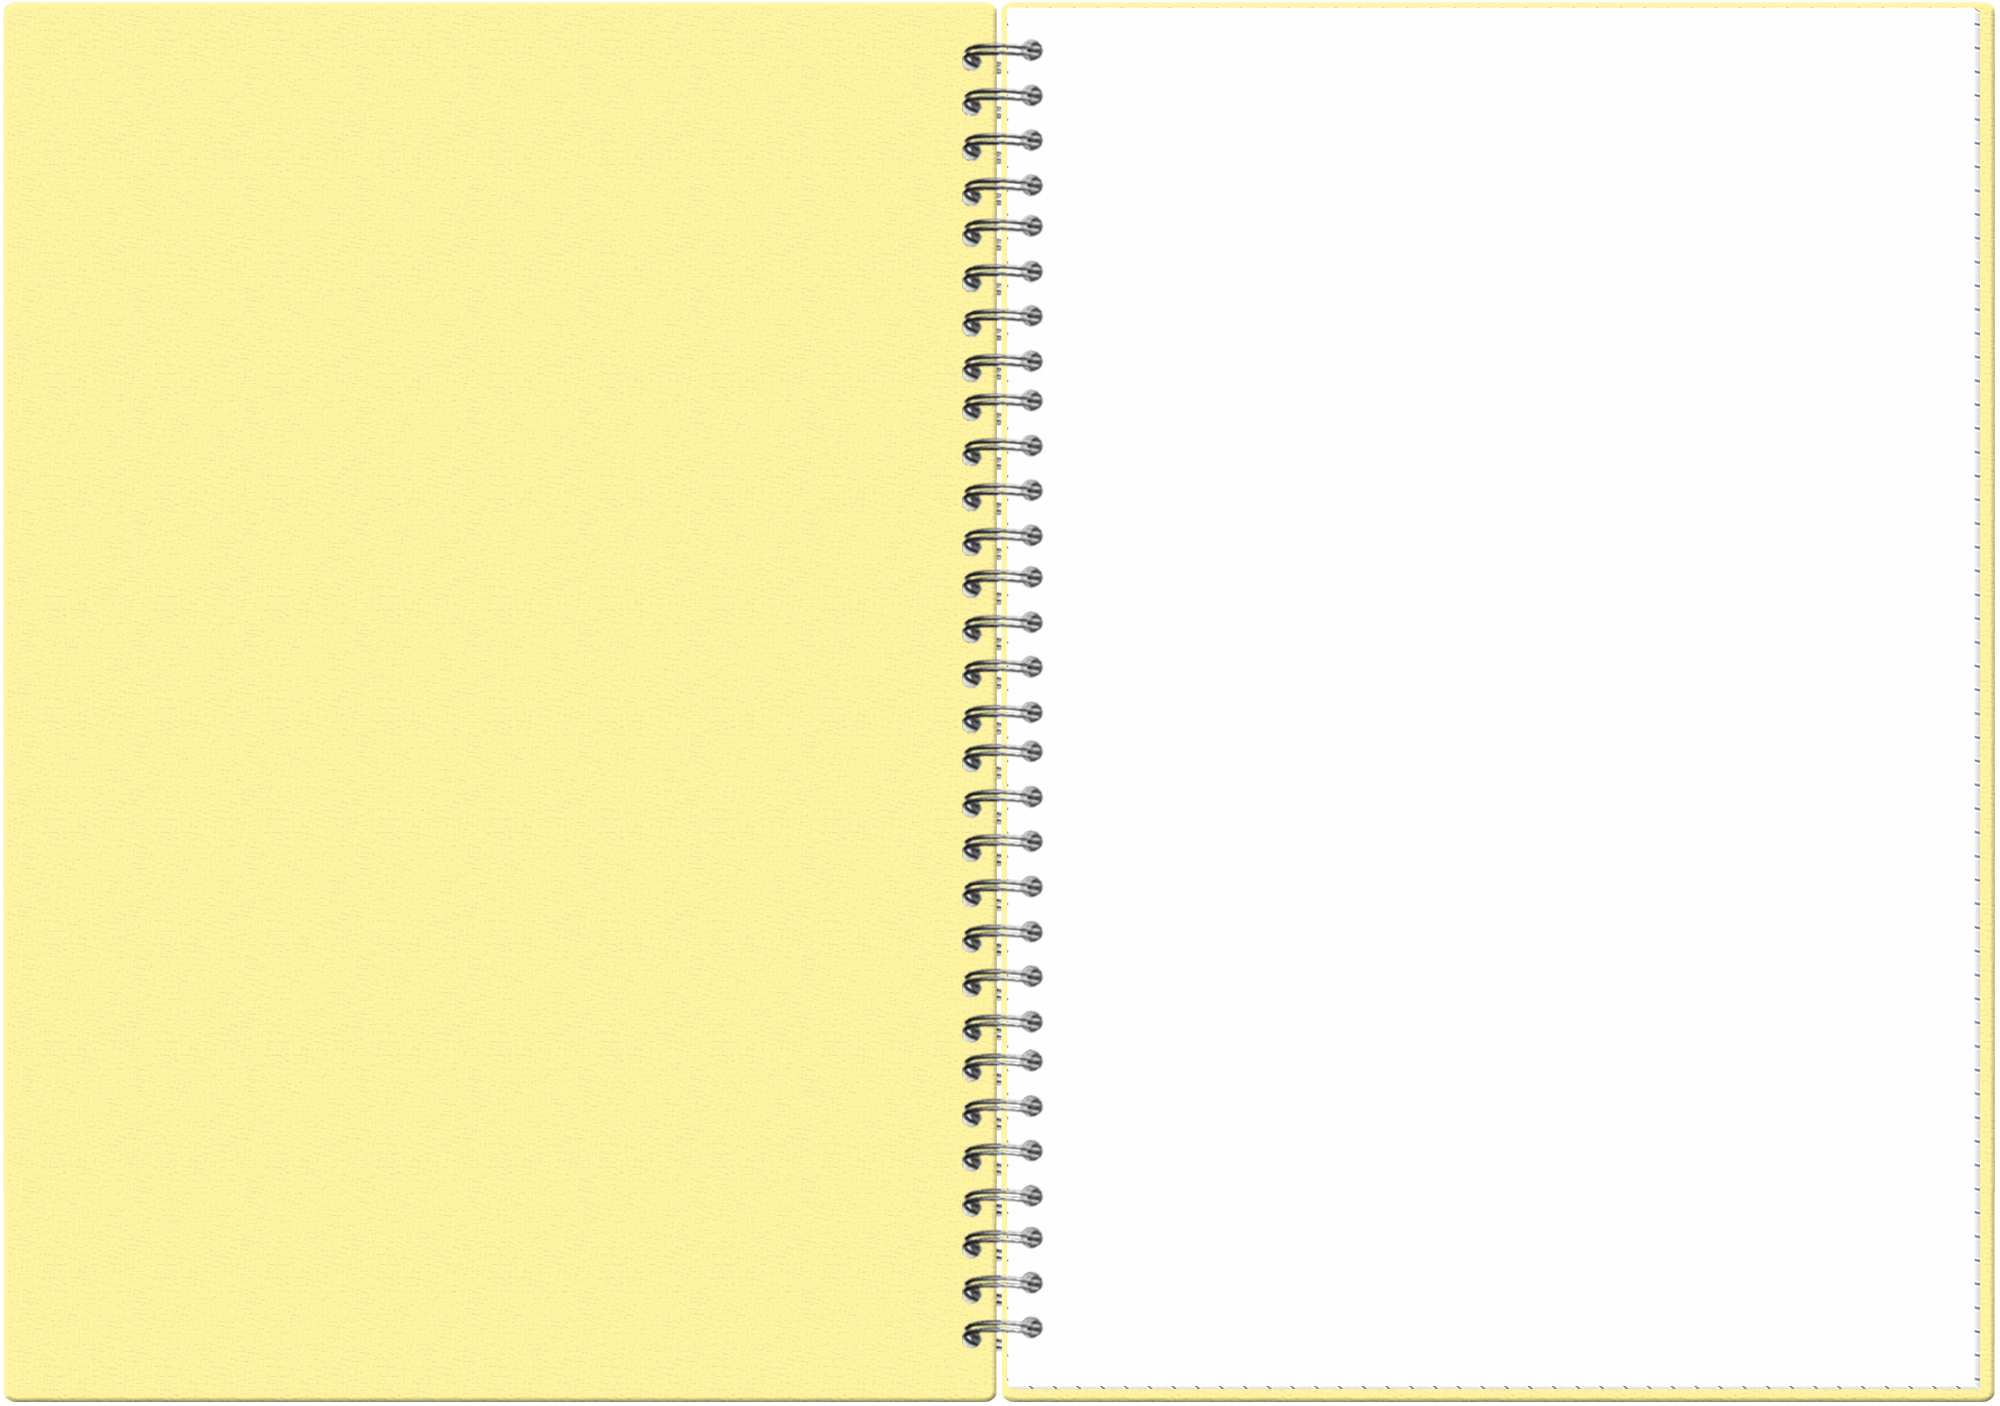 Тетрадь А4, 80 листов, Pastel Collection Yellow